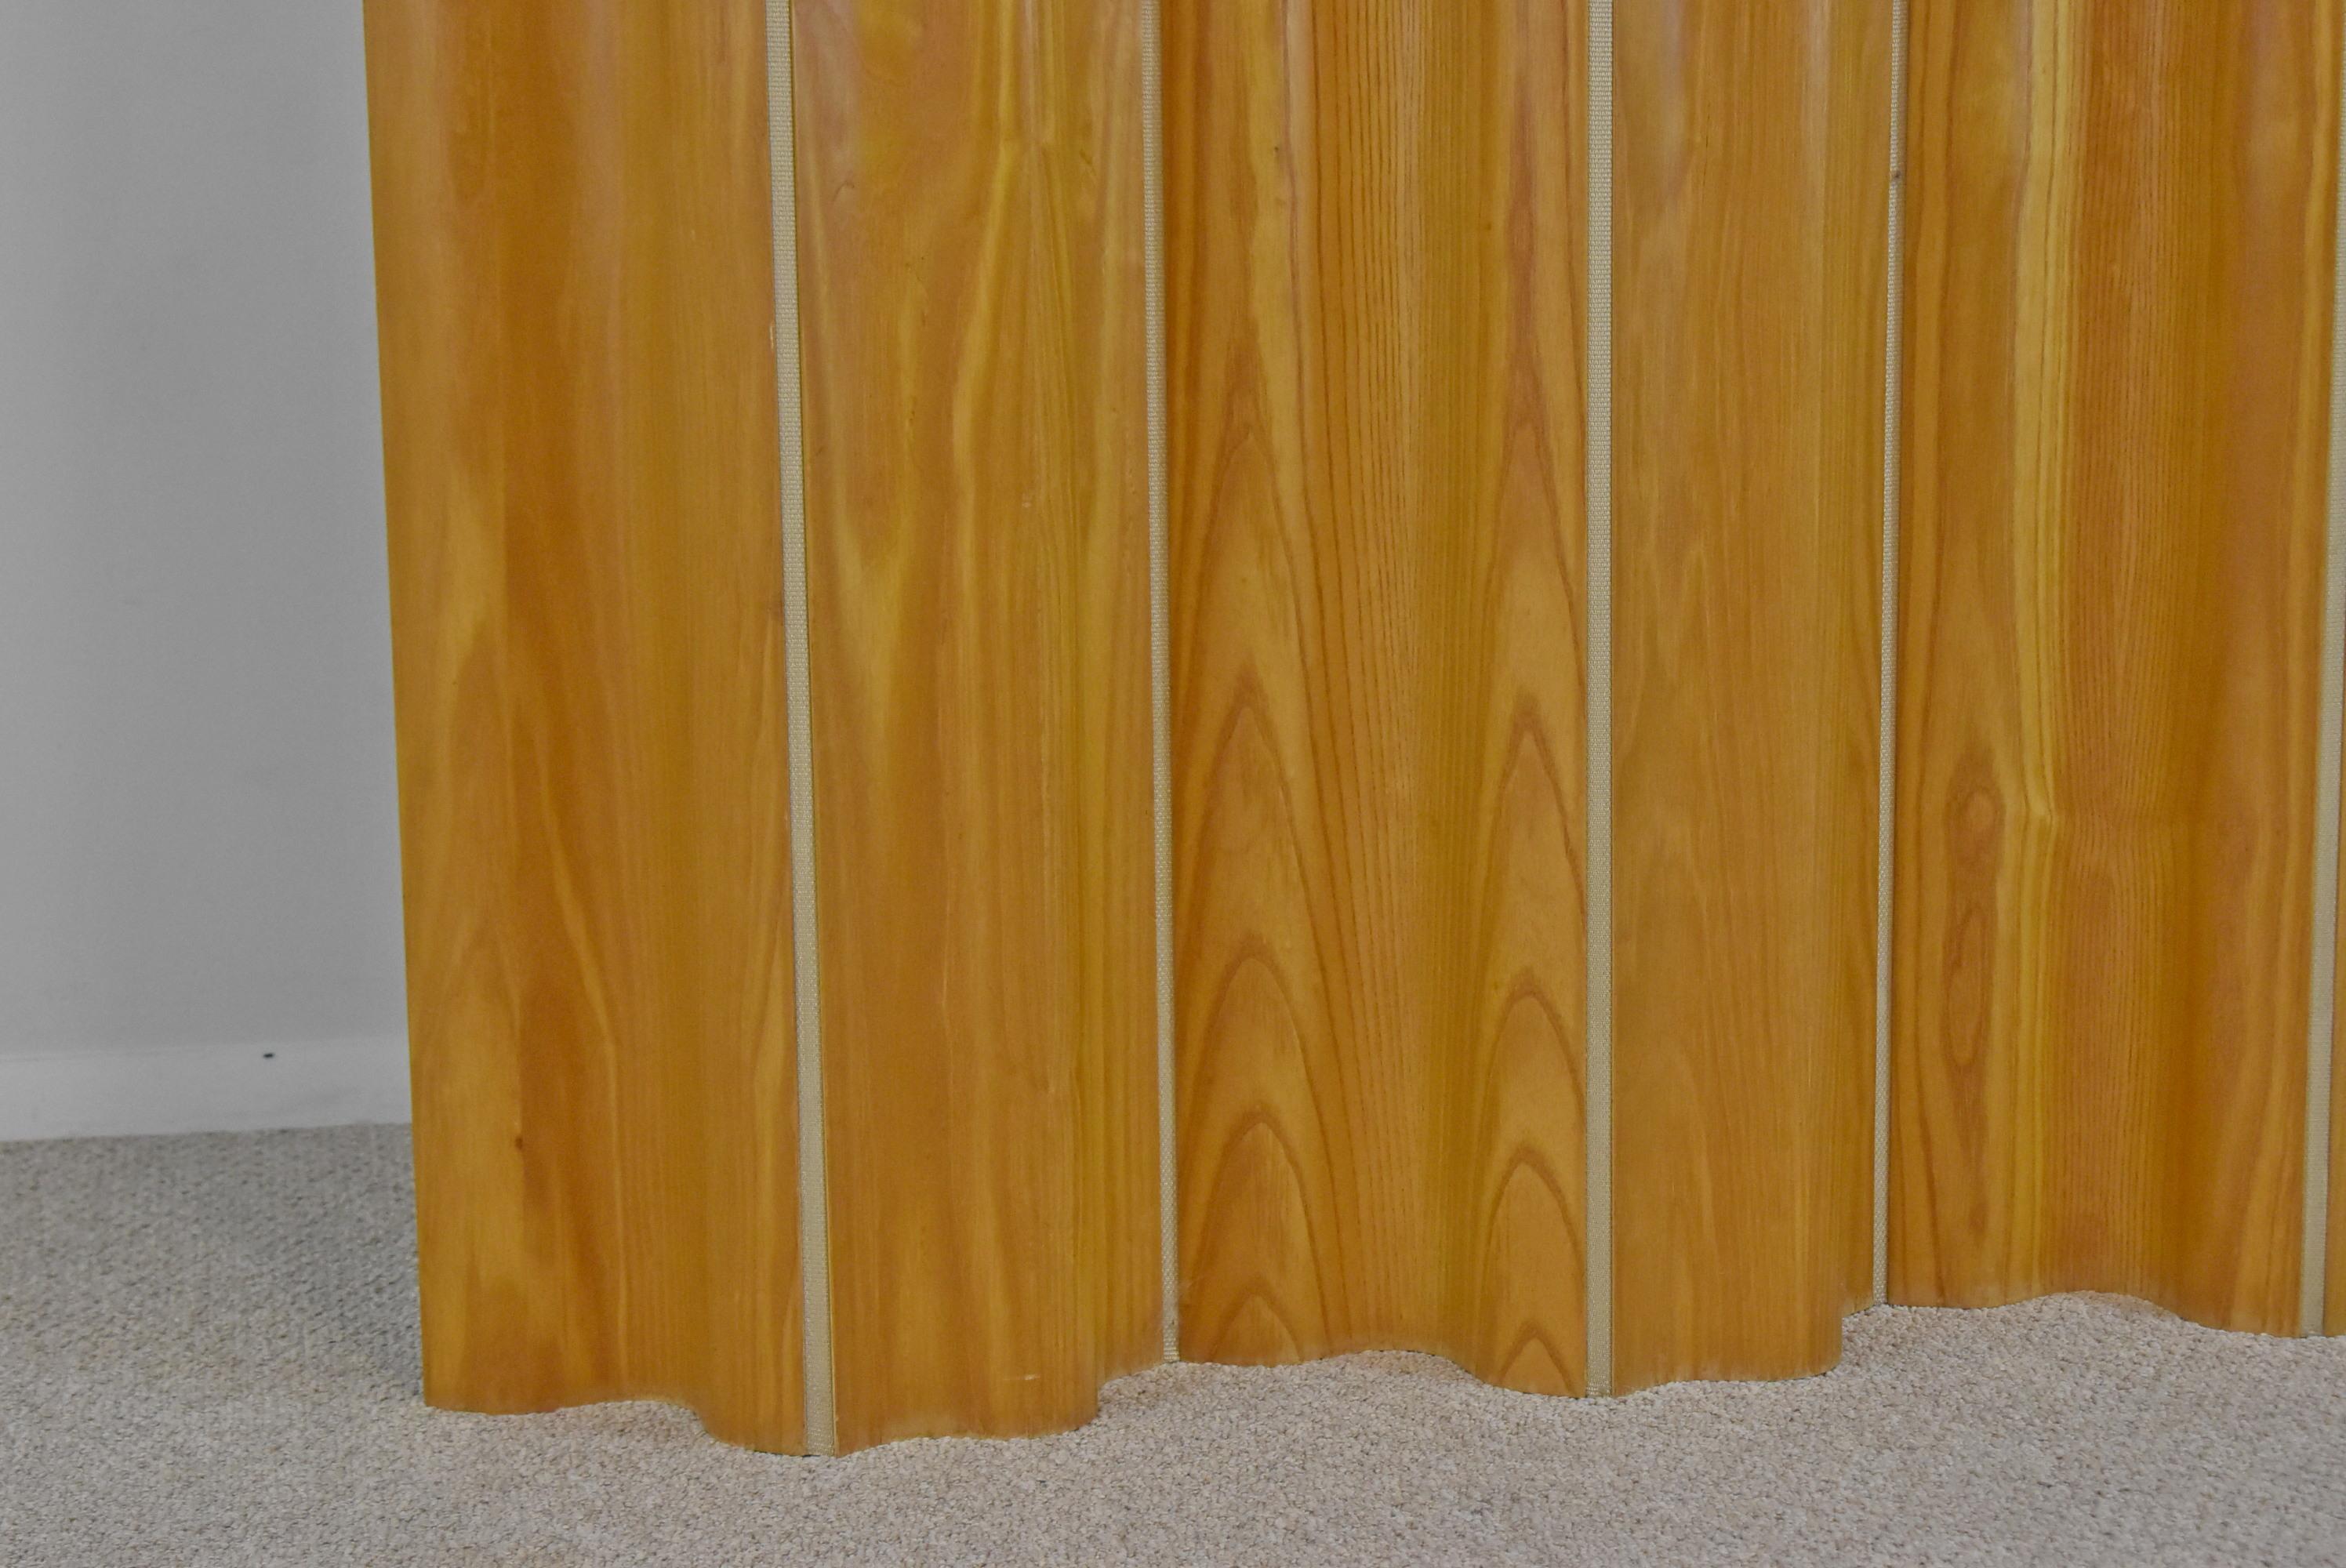 Séparation de pièce Eames à 6 panneaux en chêne par Herman Miller. Conçu par Charles et Ray Eames et fabriqué par Herman Miller dans les années 1940. Un filet en polypropylène tissé durable relie les 6 panneaux incurvés en bois courbé de chêne. Se